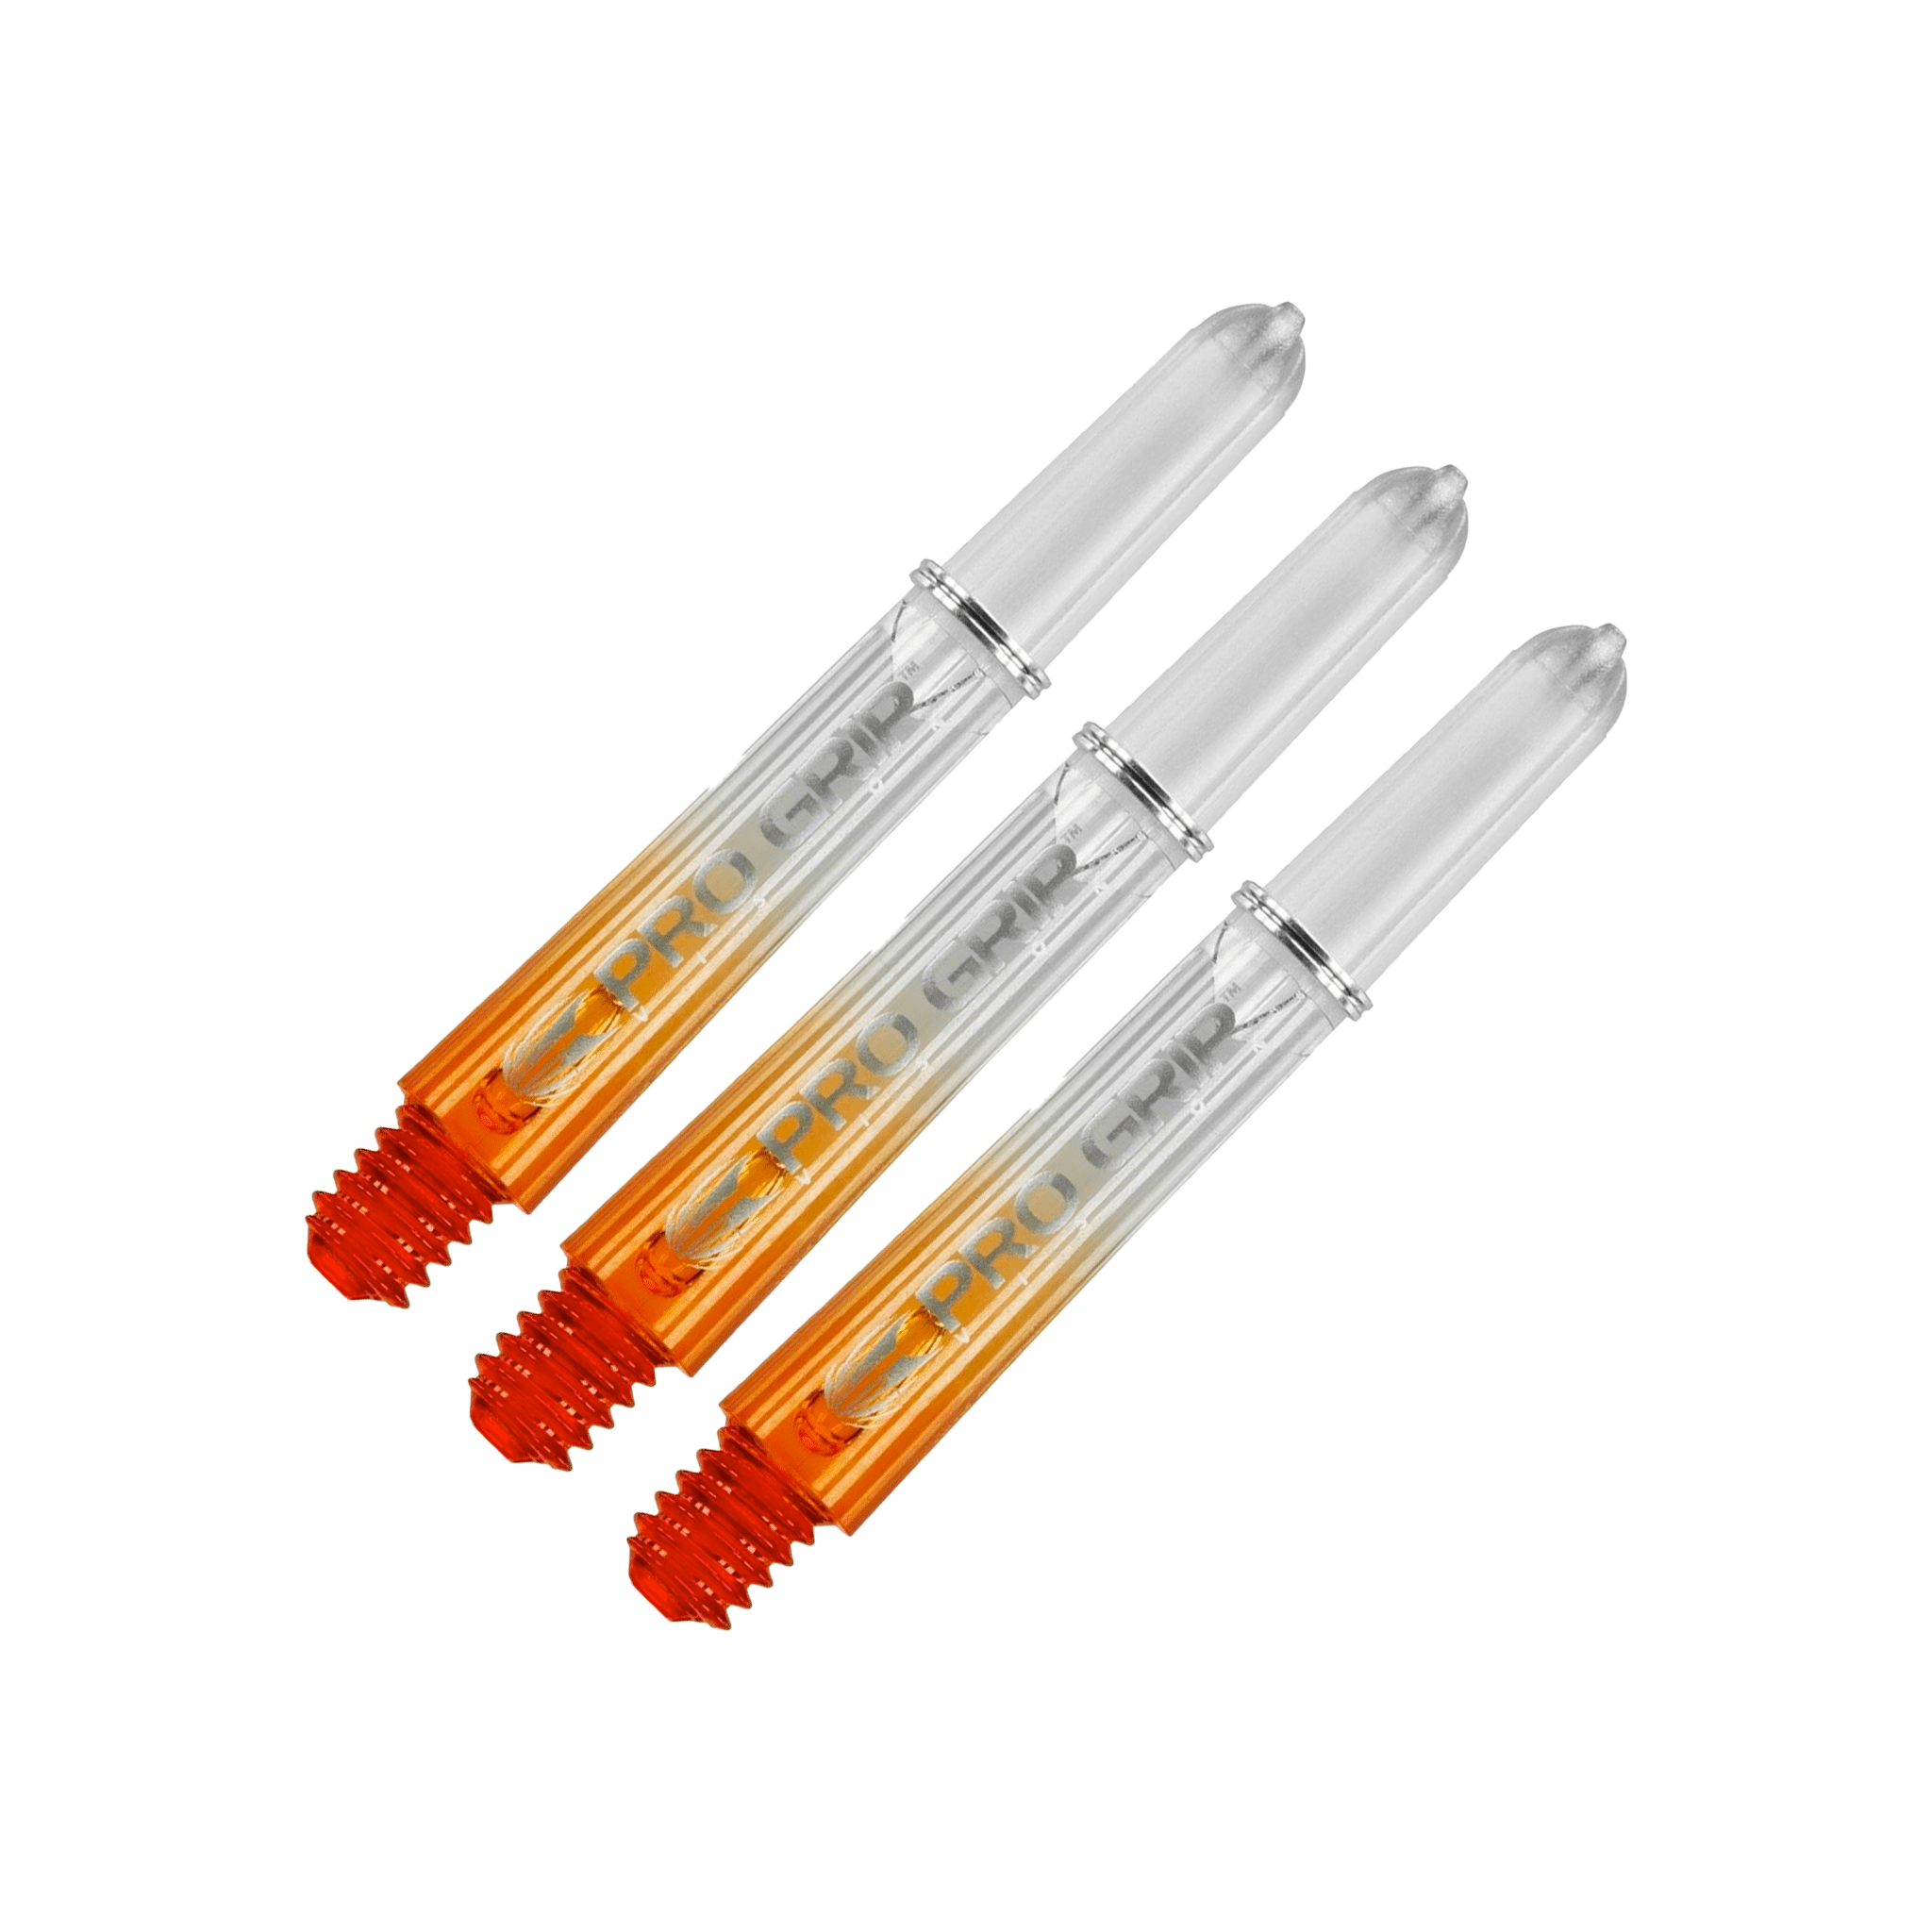 Target Pro Vision Short (34mm) Polycarbonate Dart Shafts Orange Shafts